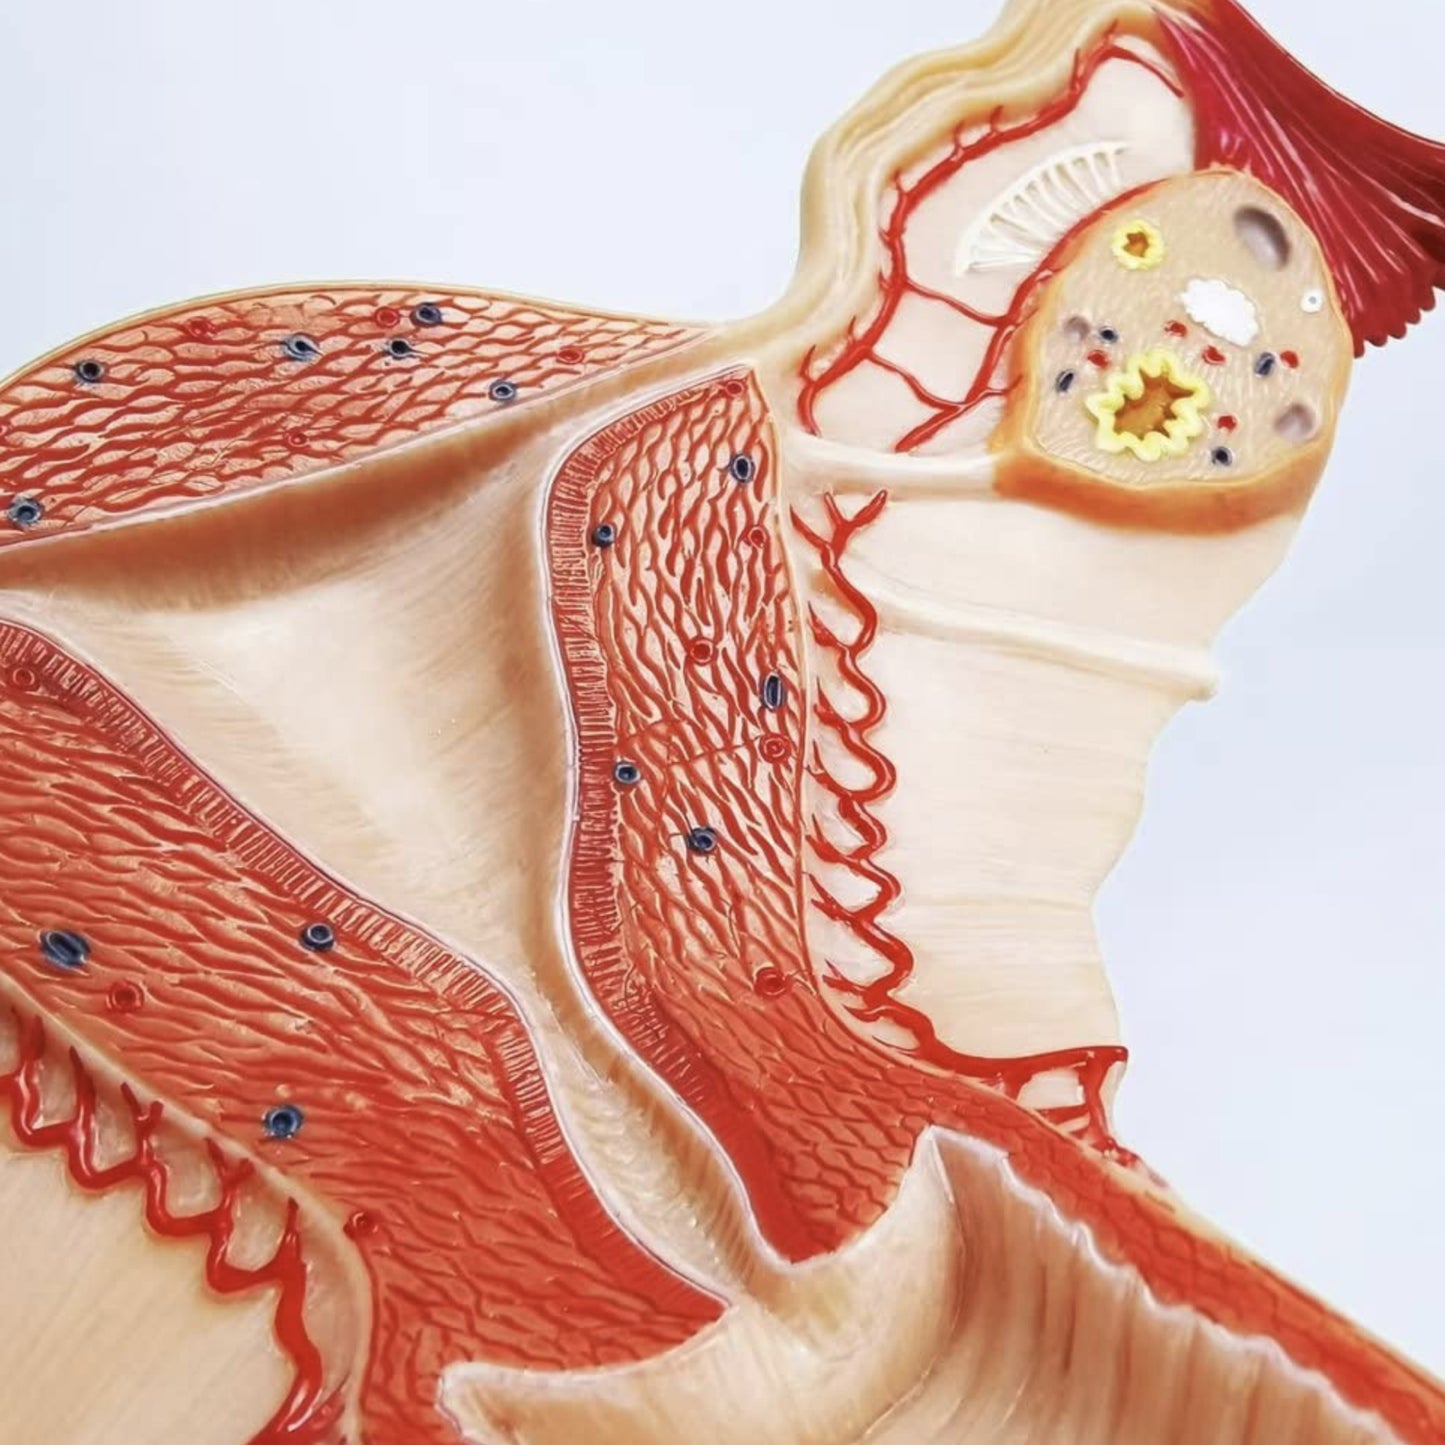 Anatomisk model af kvindens indre kønsorganer